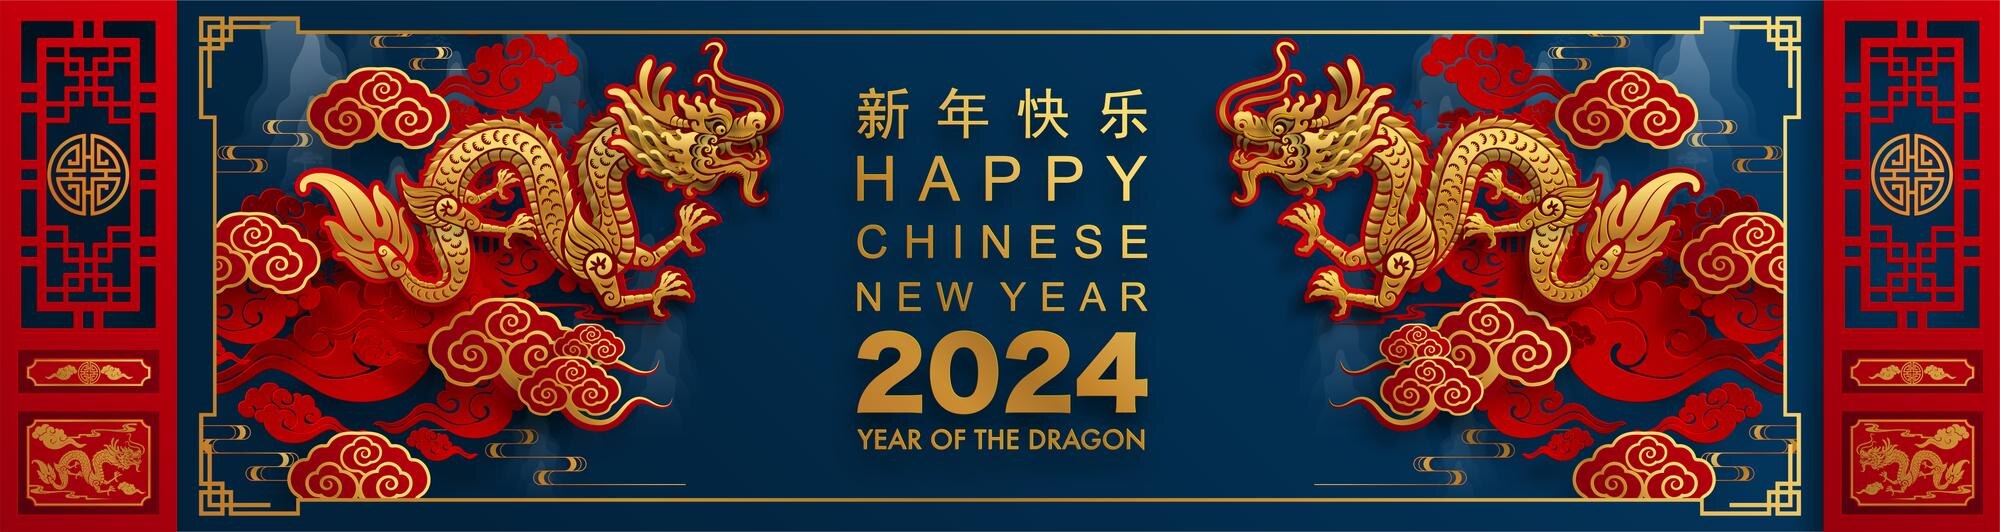 Великая китайская распродажа 2024. Китайский новый год 2024. Китайский новый год в 2024 году. Китайский новый год 2024 год дракона. Китайский новый год 2024 открытки.